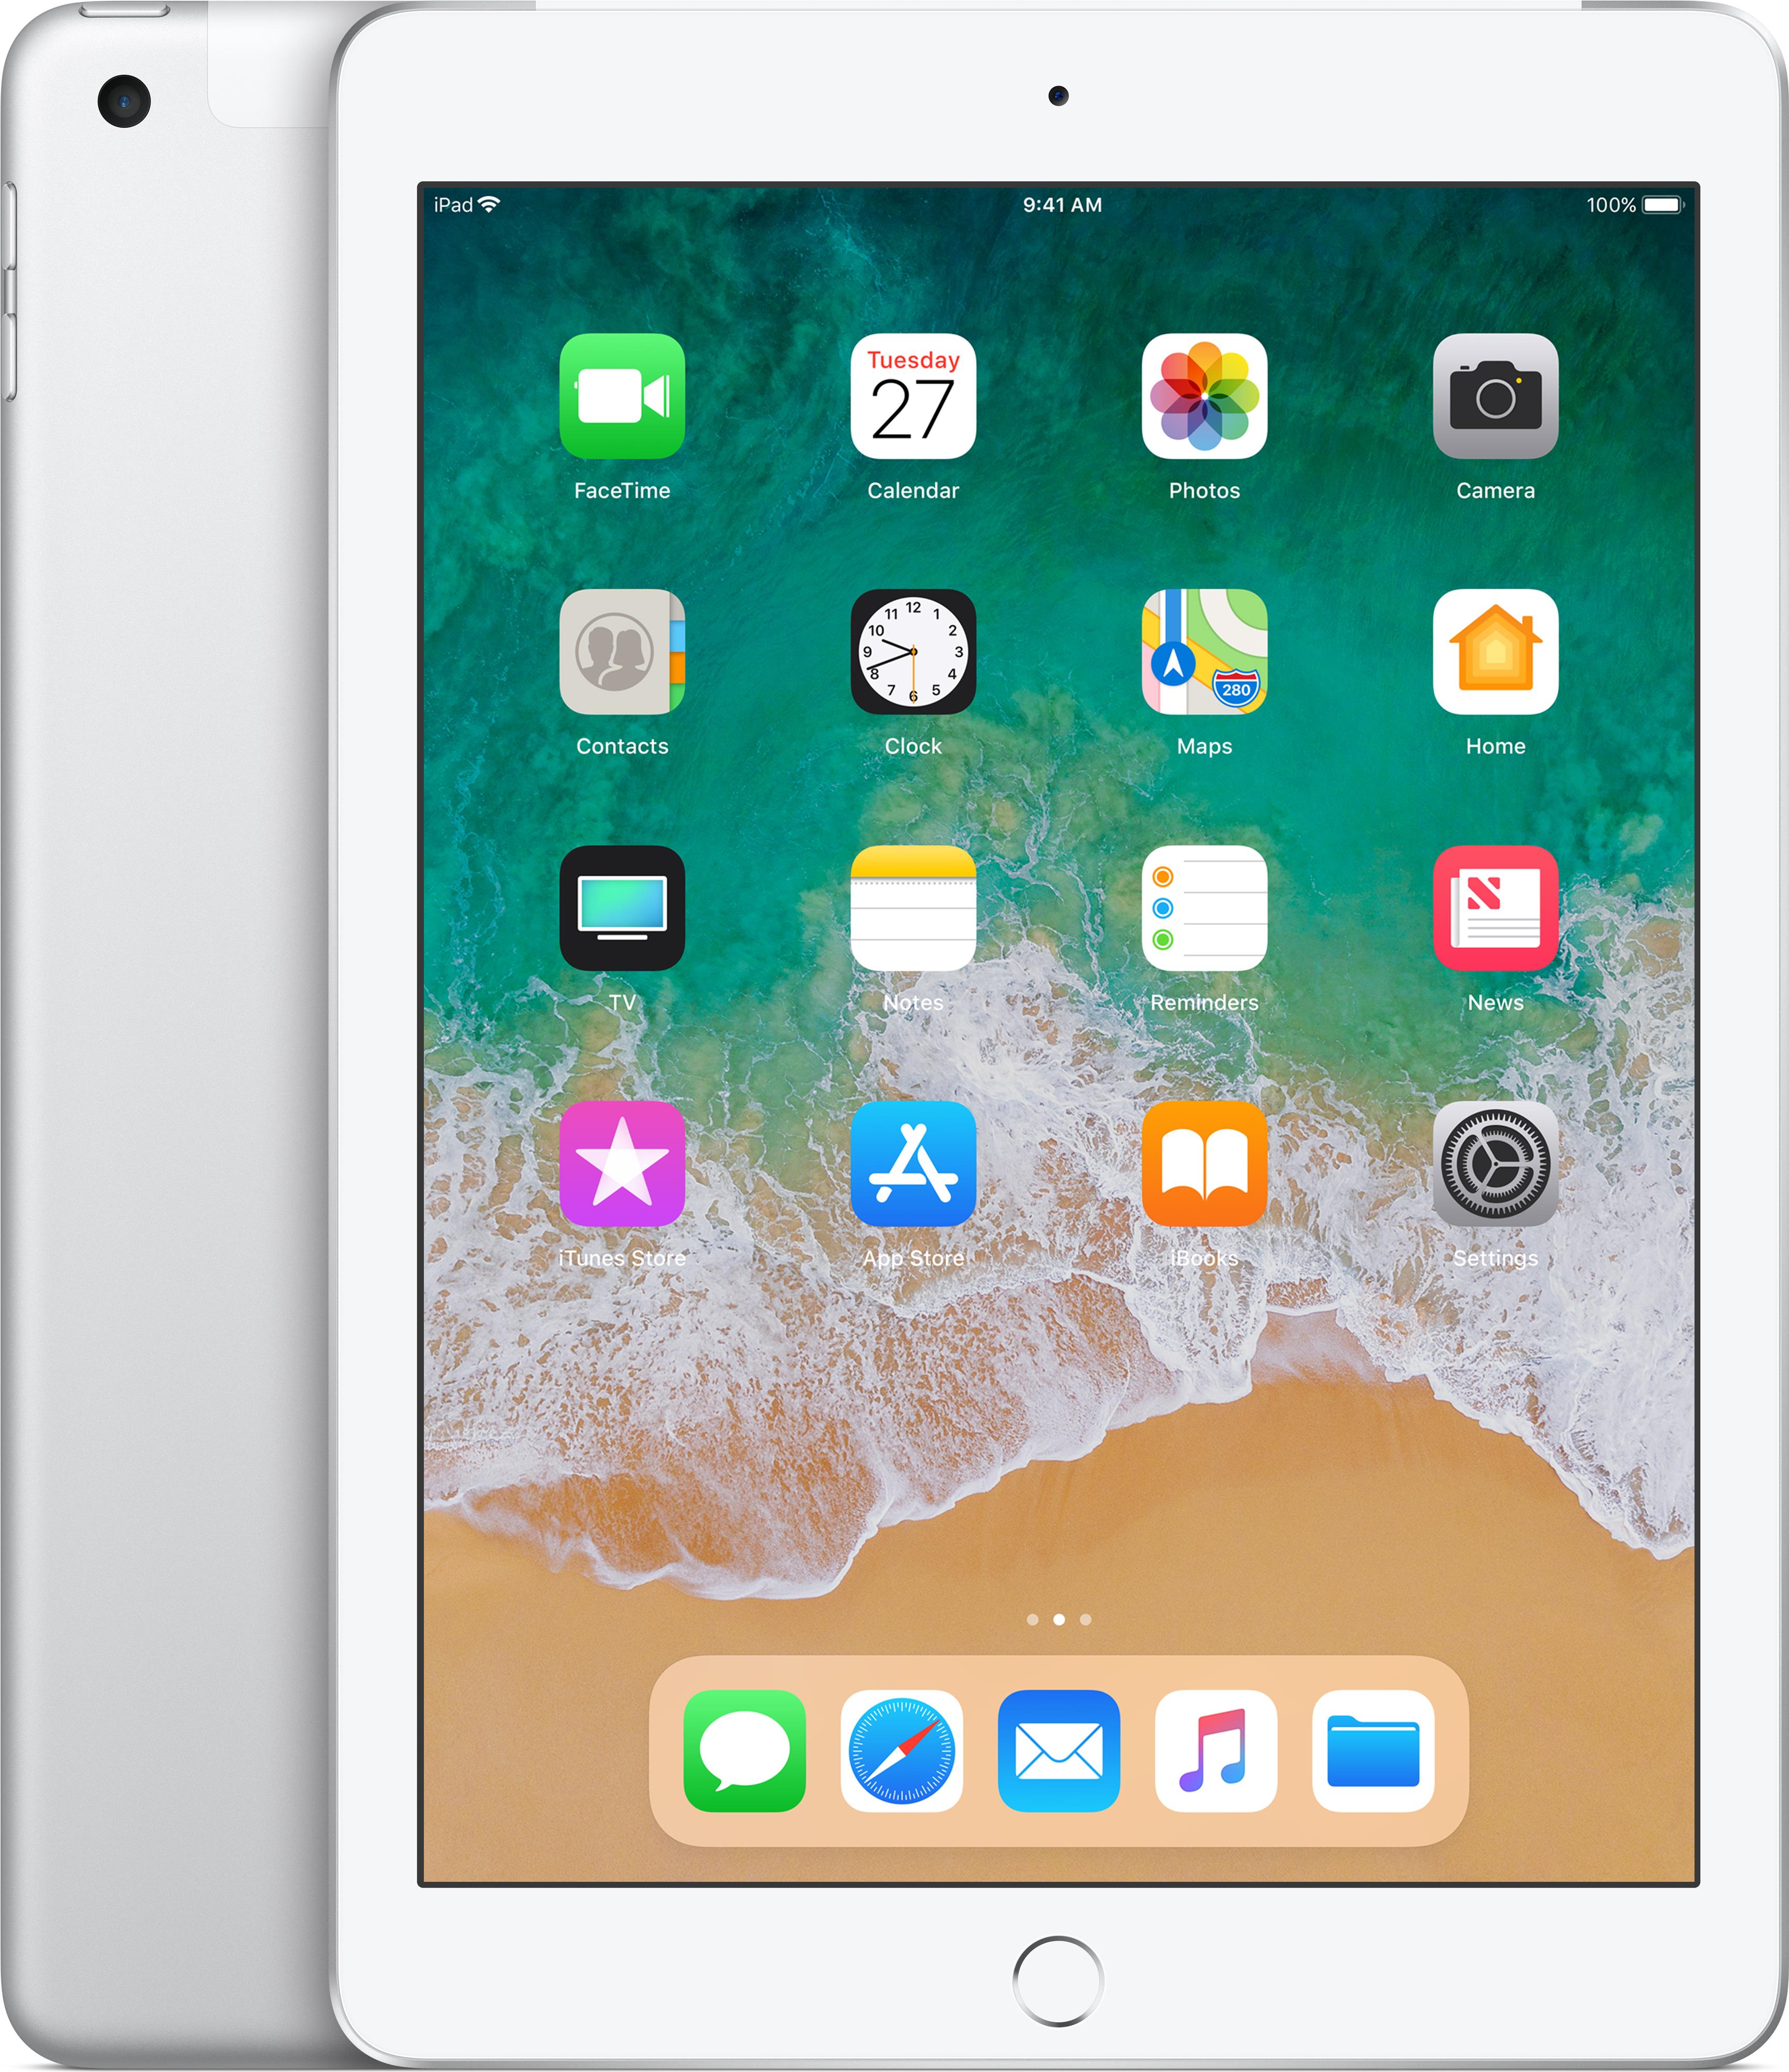 Apple iPad 9,7 Wi-Fi + Cellular 128 GB Silber - Tablet (MR7D2FD/A)